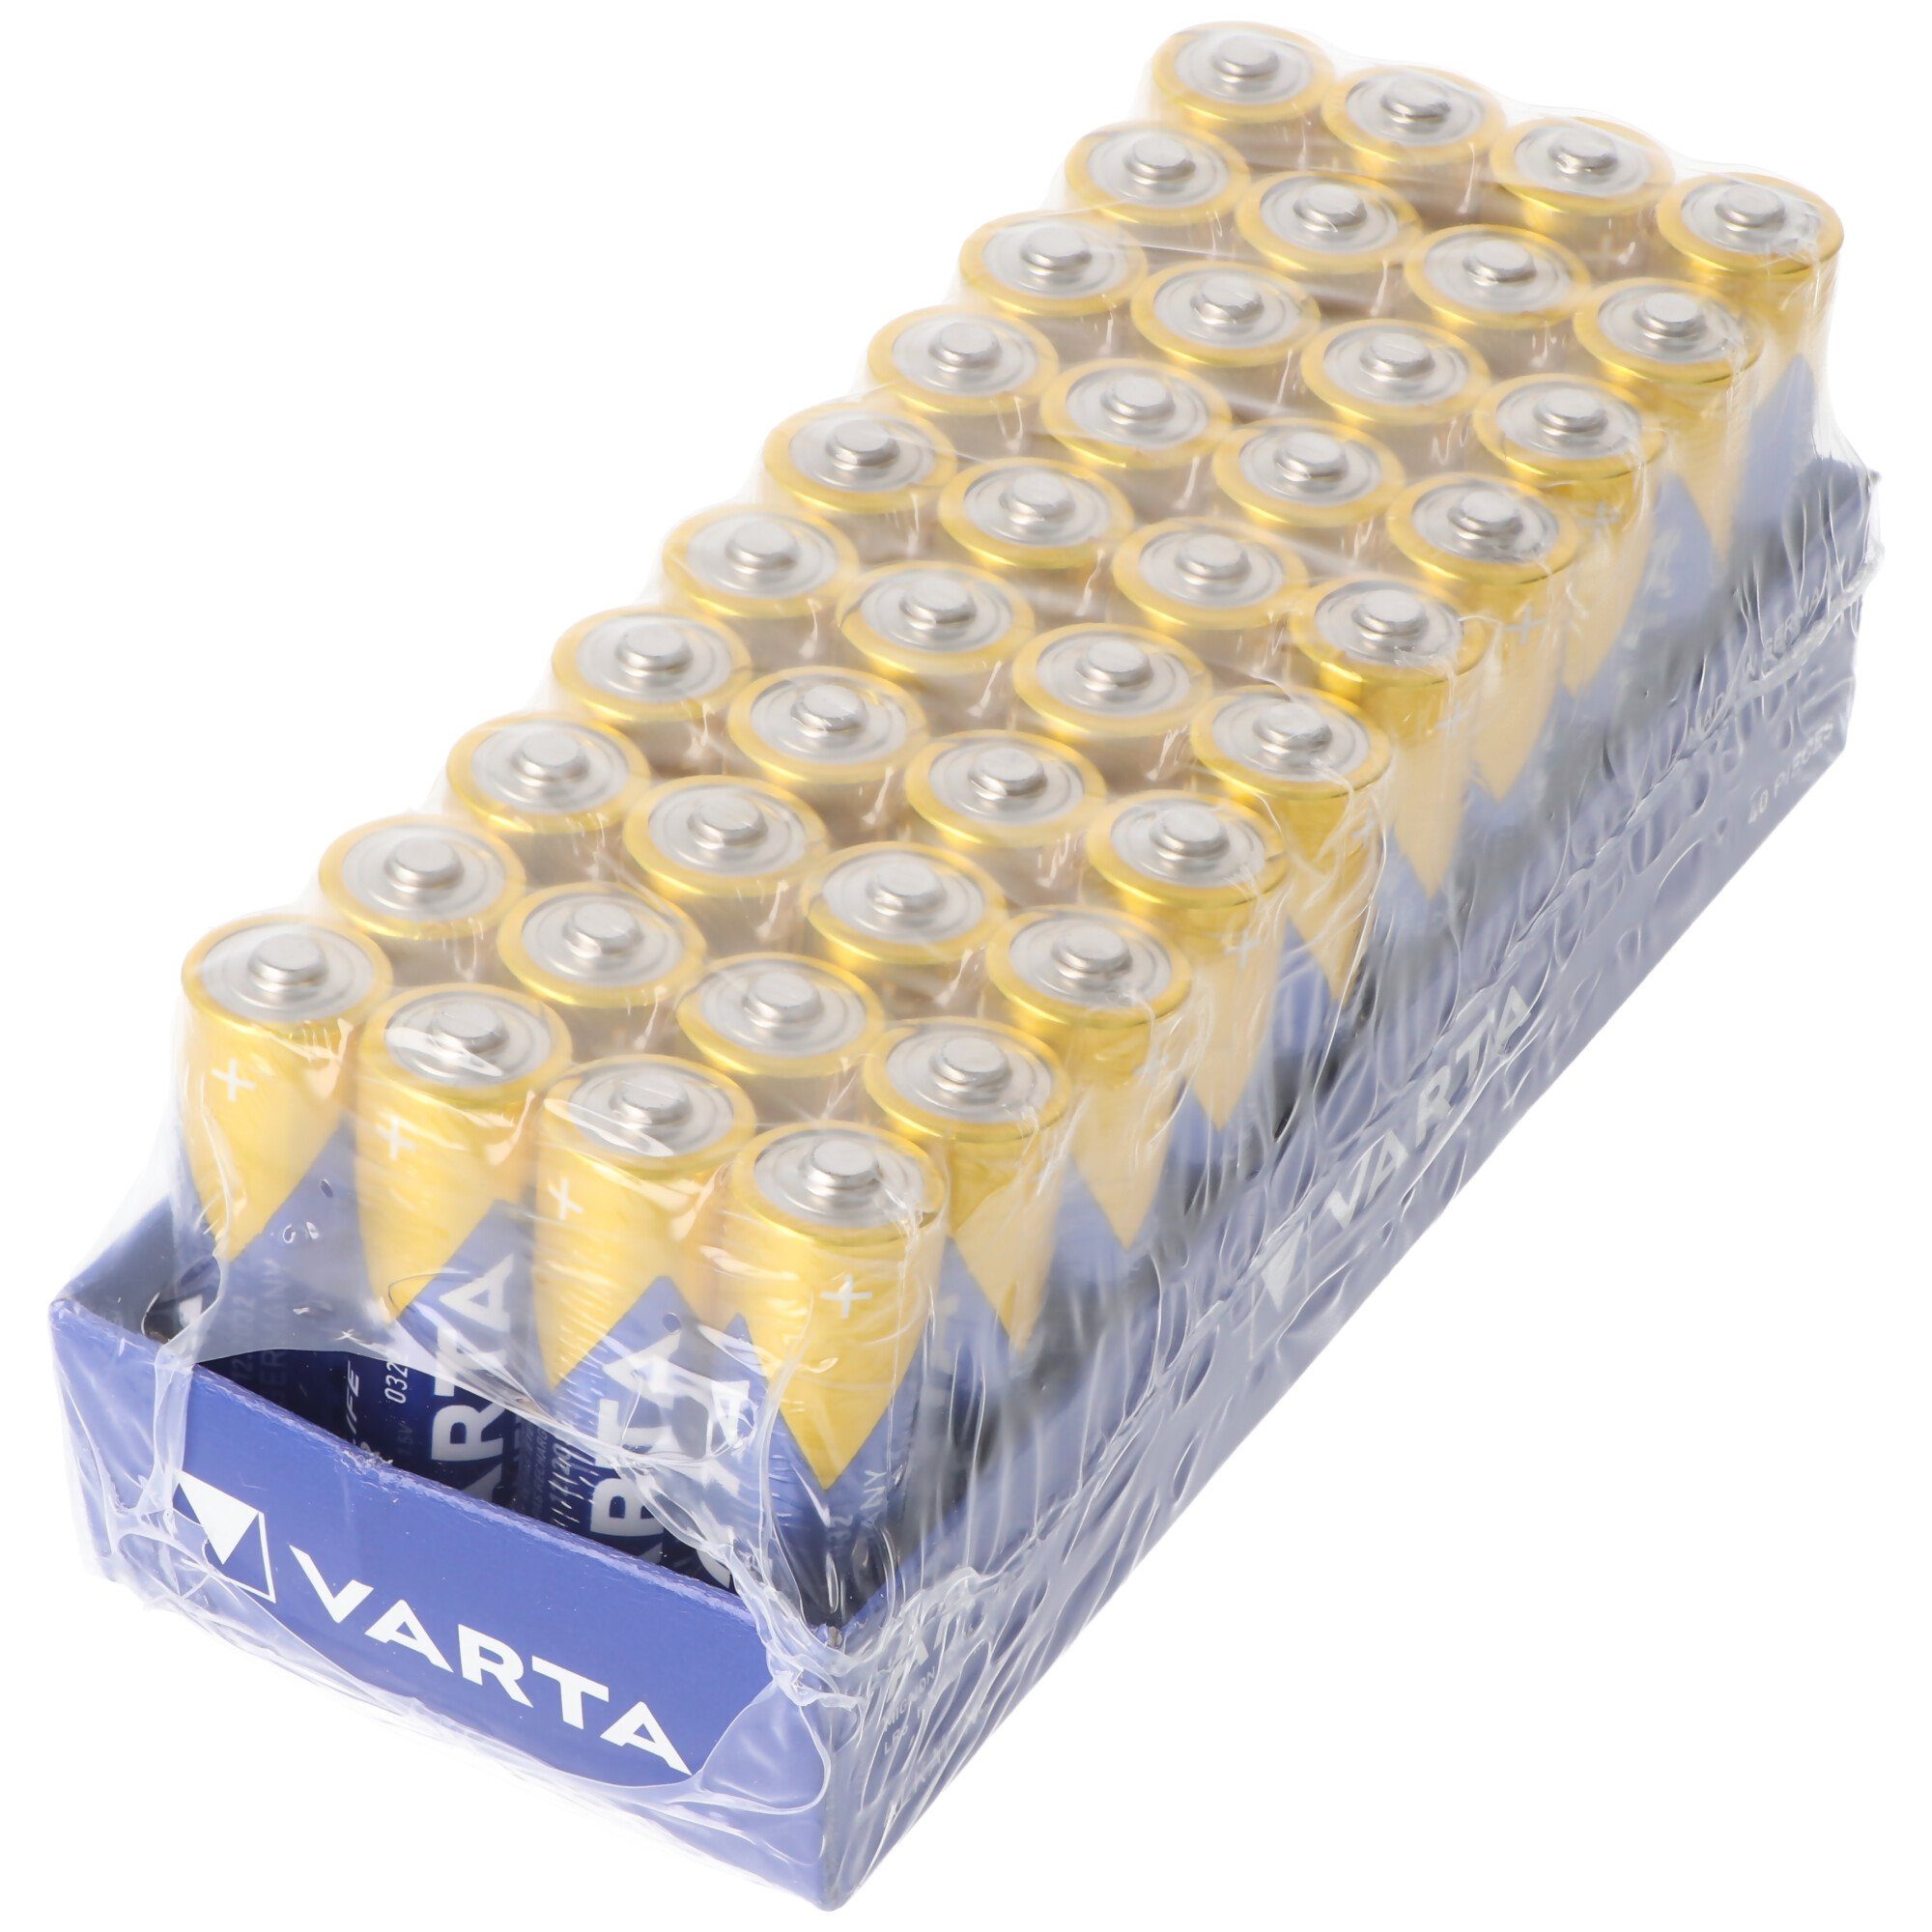 4906 (1,5 Box 40er High Longlife Batterie, VARTA LR6 V) ehem. Varta Power in AA Energy Mignon